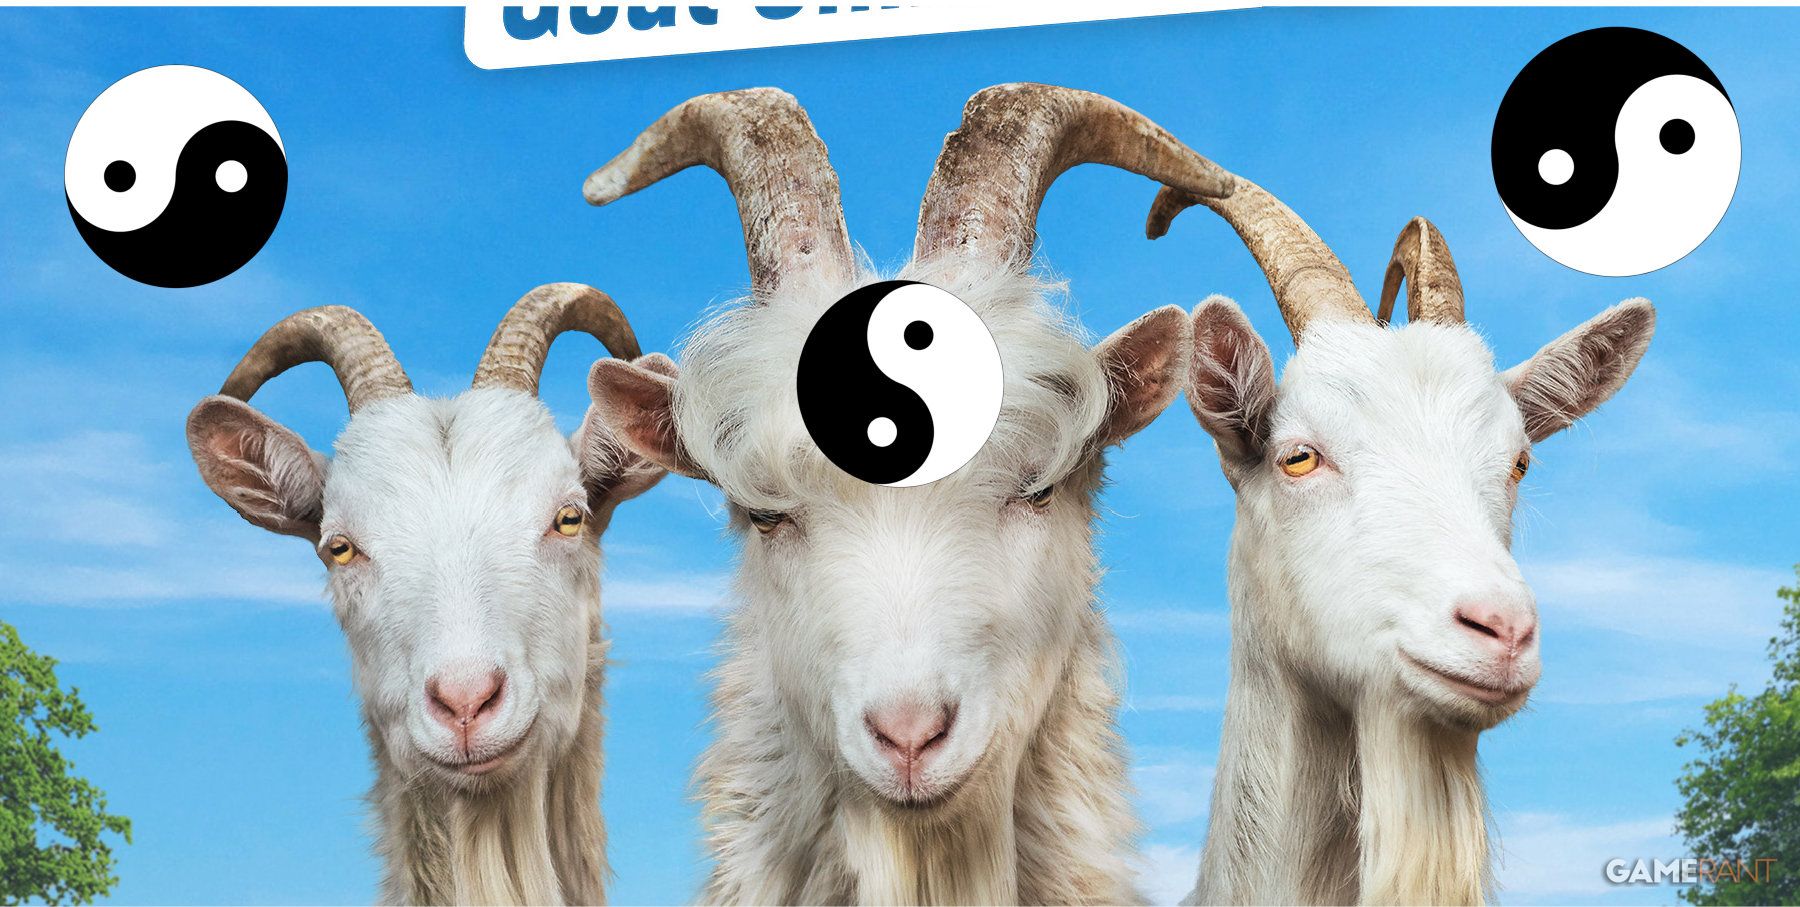 Goat Simulator 3 Karma Points Explained